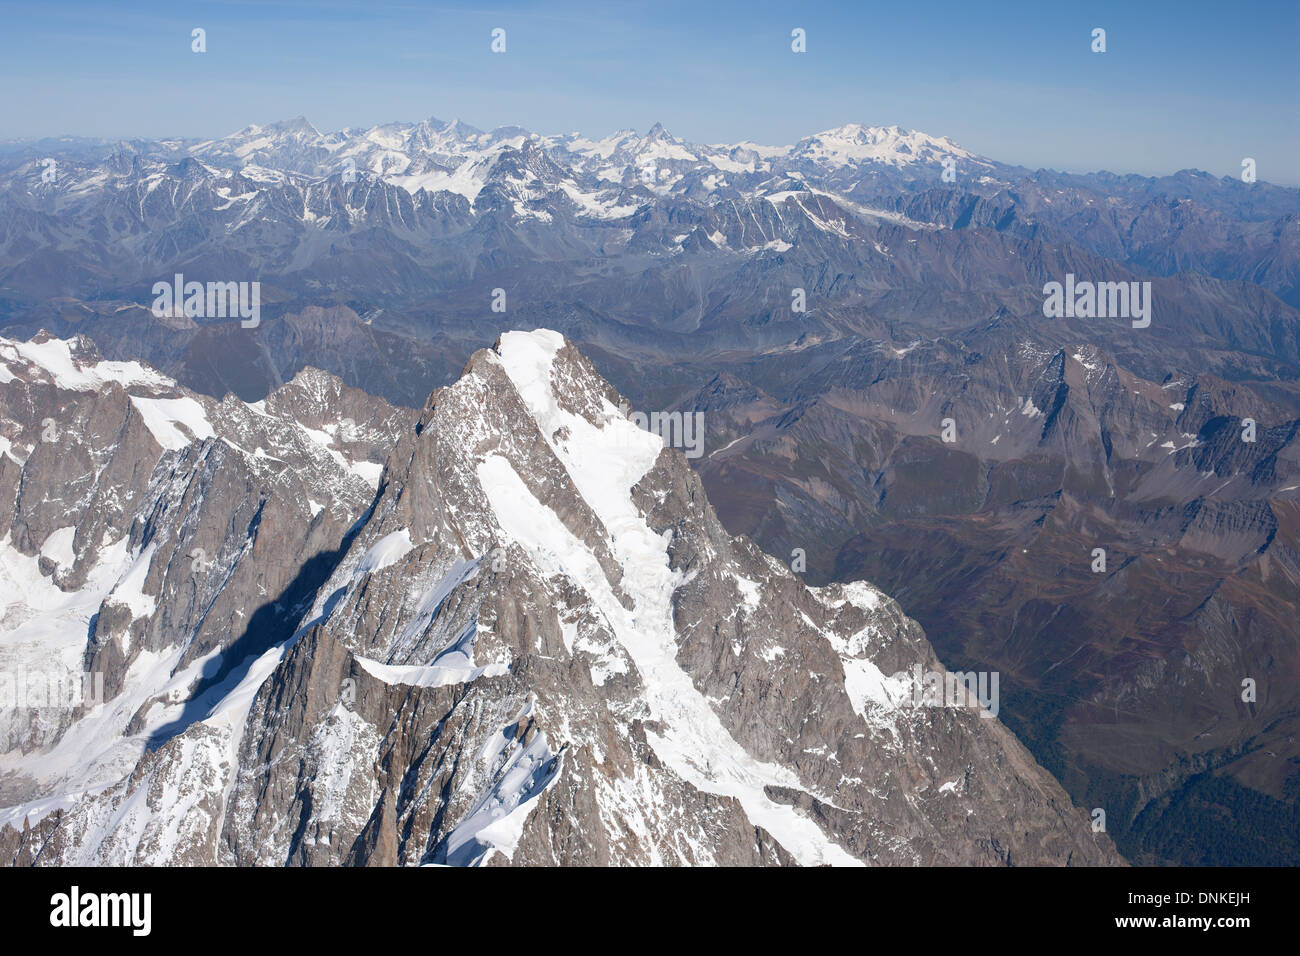 VUE AÉRIENNE.Pic des grandes Jorasses (altitude : 4208m) avec Monte Rosa et Matterhorn au loin.Chamonix Mont-blanc, France et Courmayeur, Italie. Banque D'Images